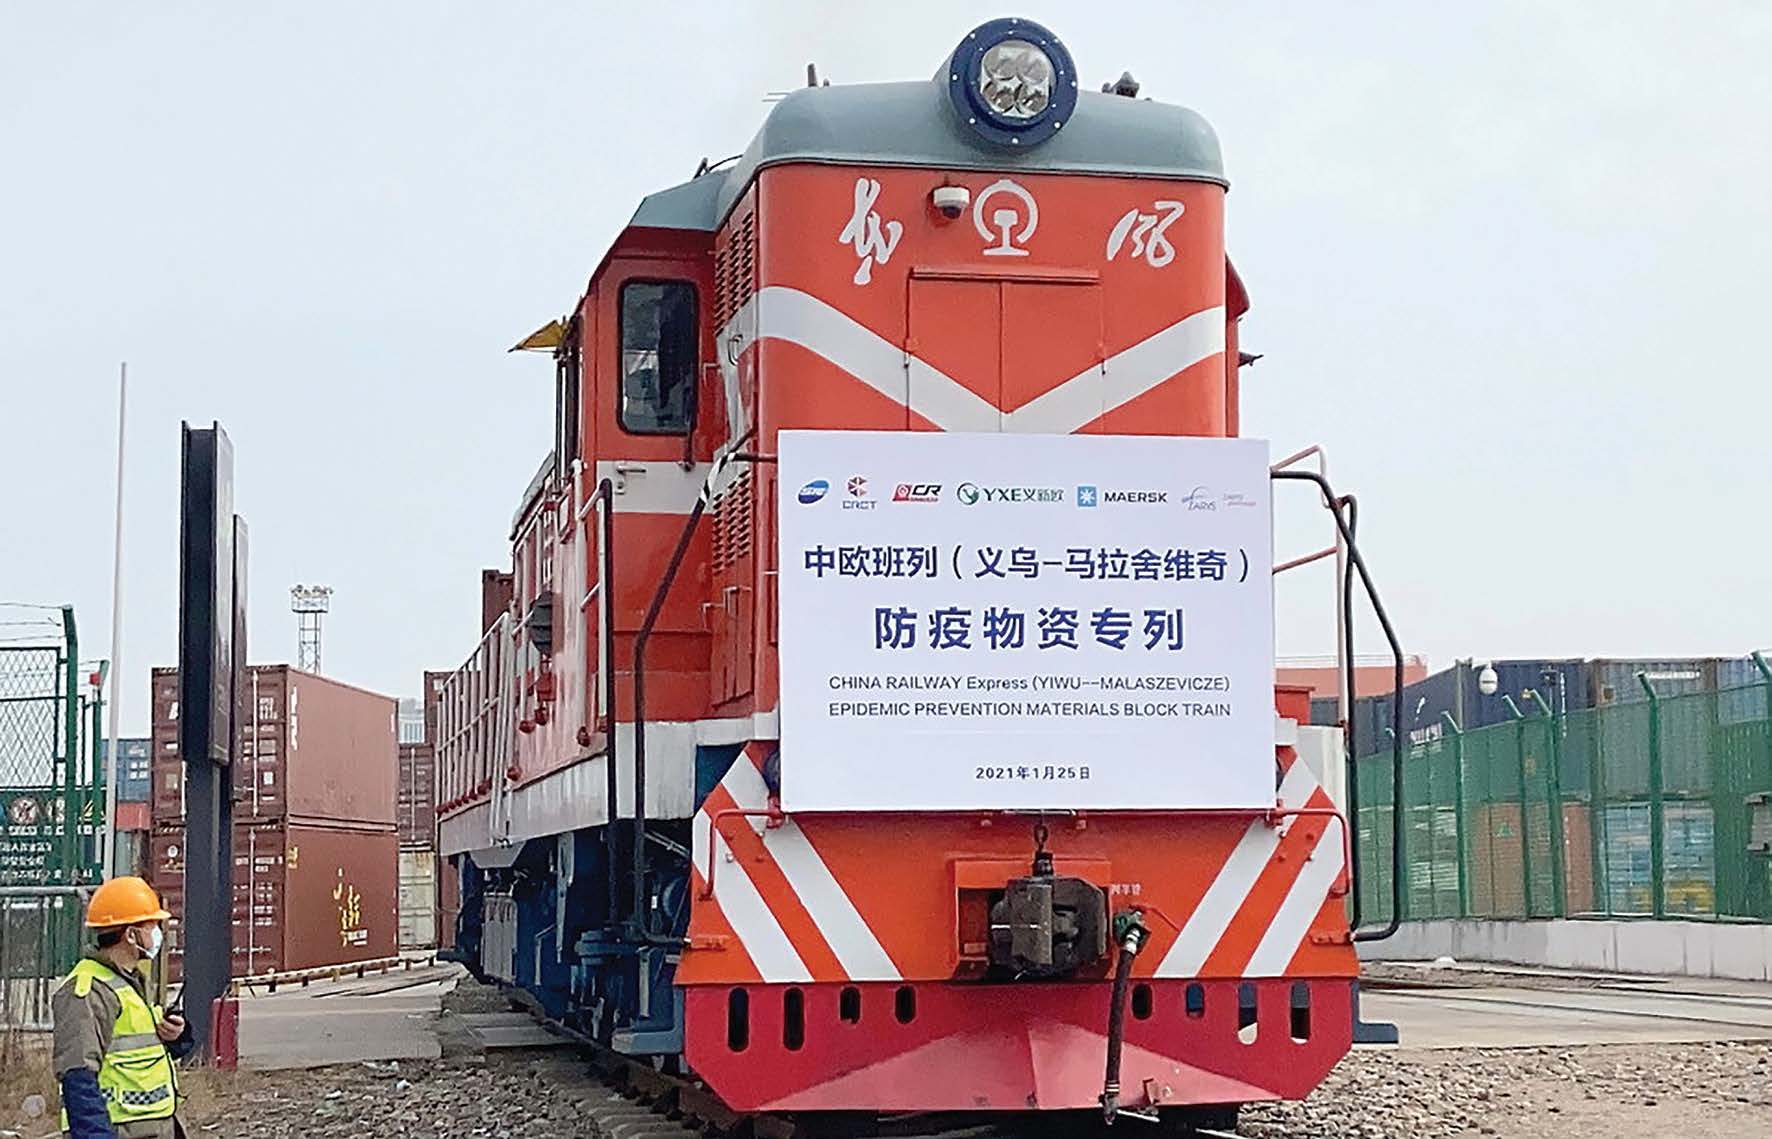 A China-Europe freight train loaded with anti-epidemic supplies departs from Yiwu, Zhejiang province, for Malaszewicze, Poland. (Gong Xianming/China Daily)